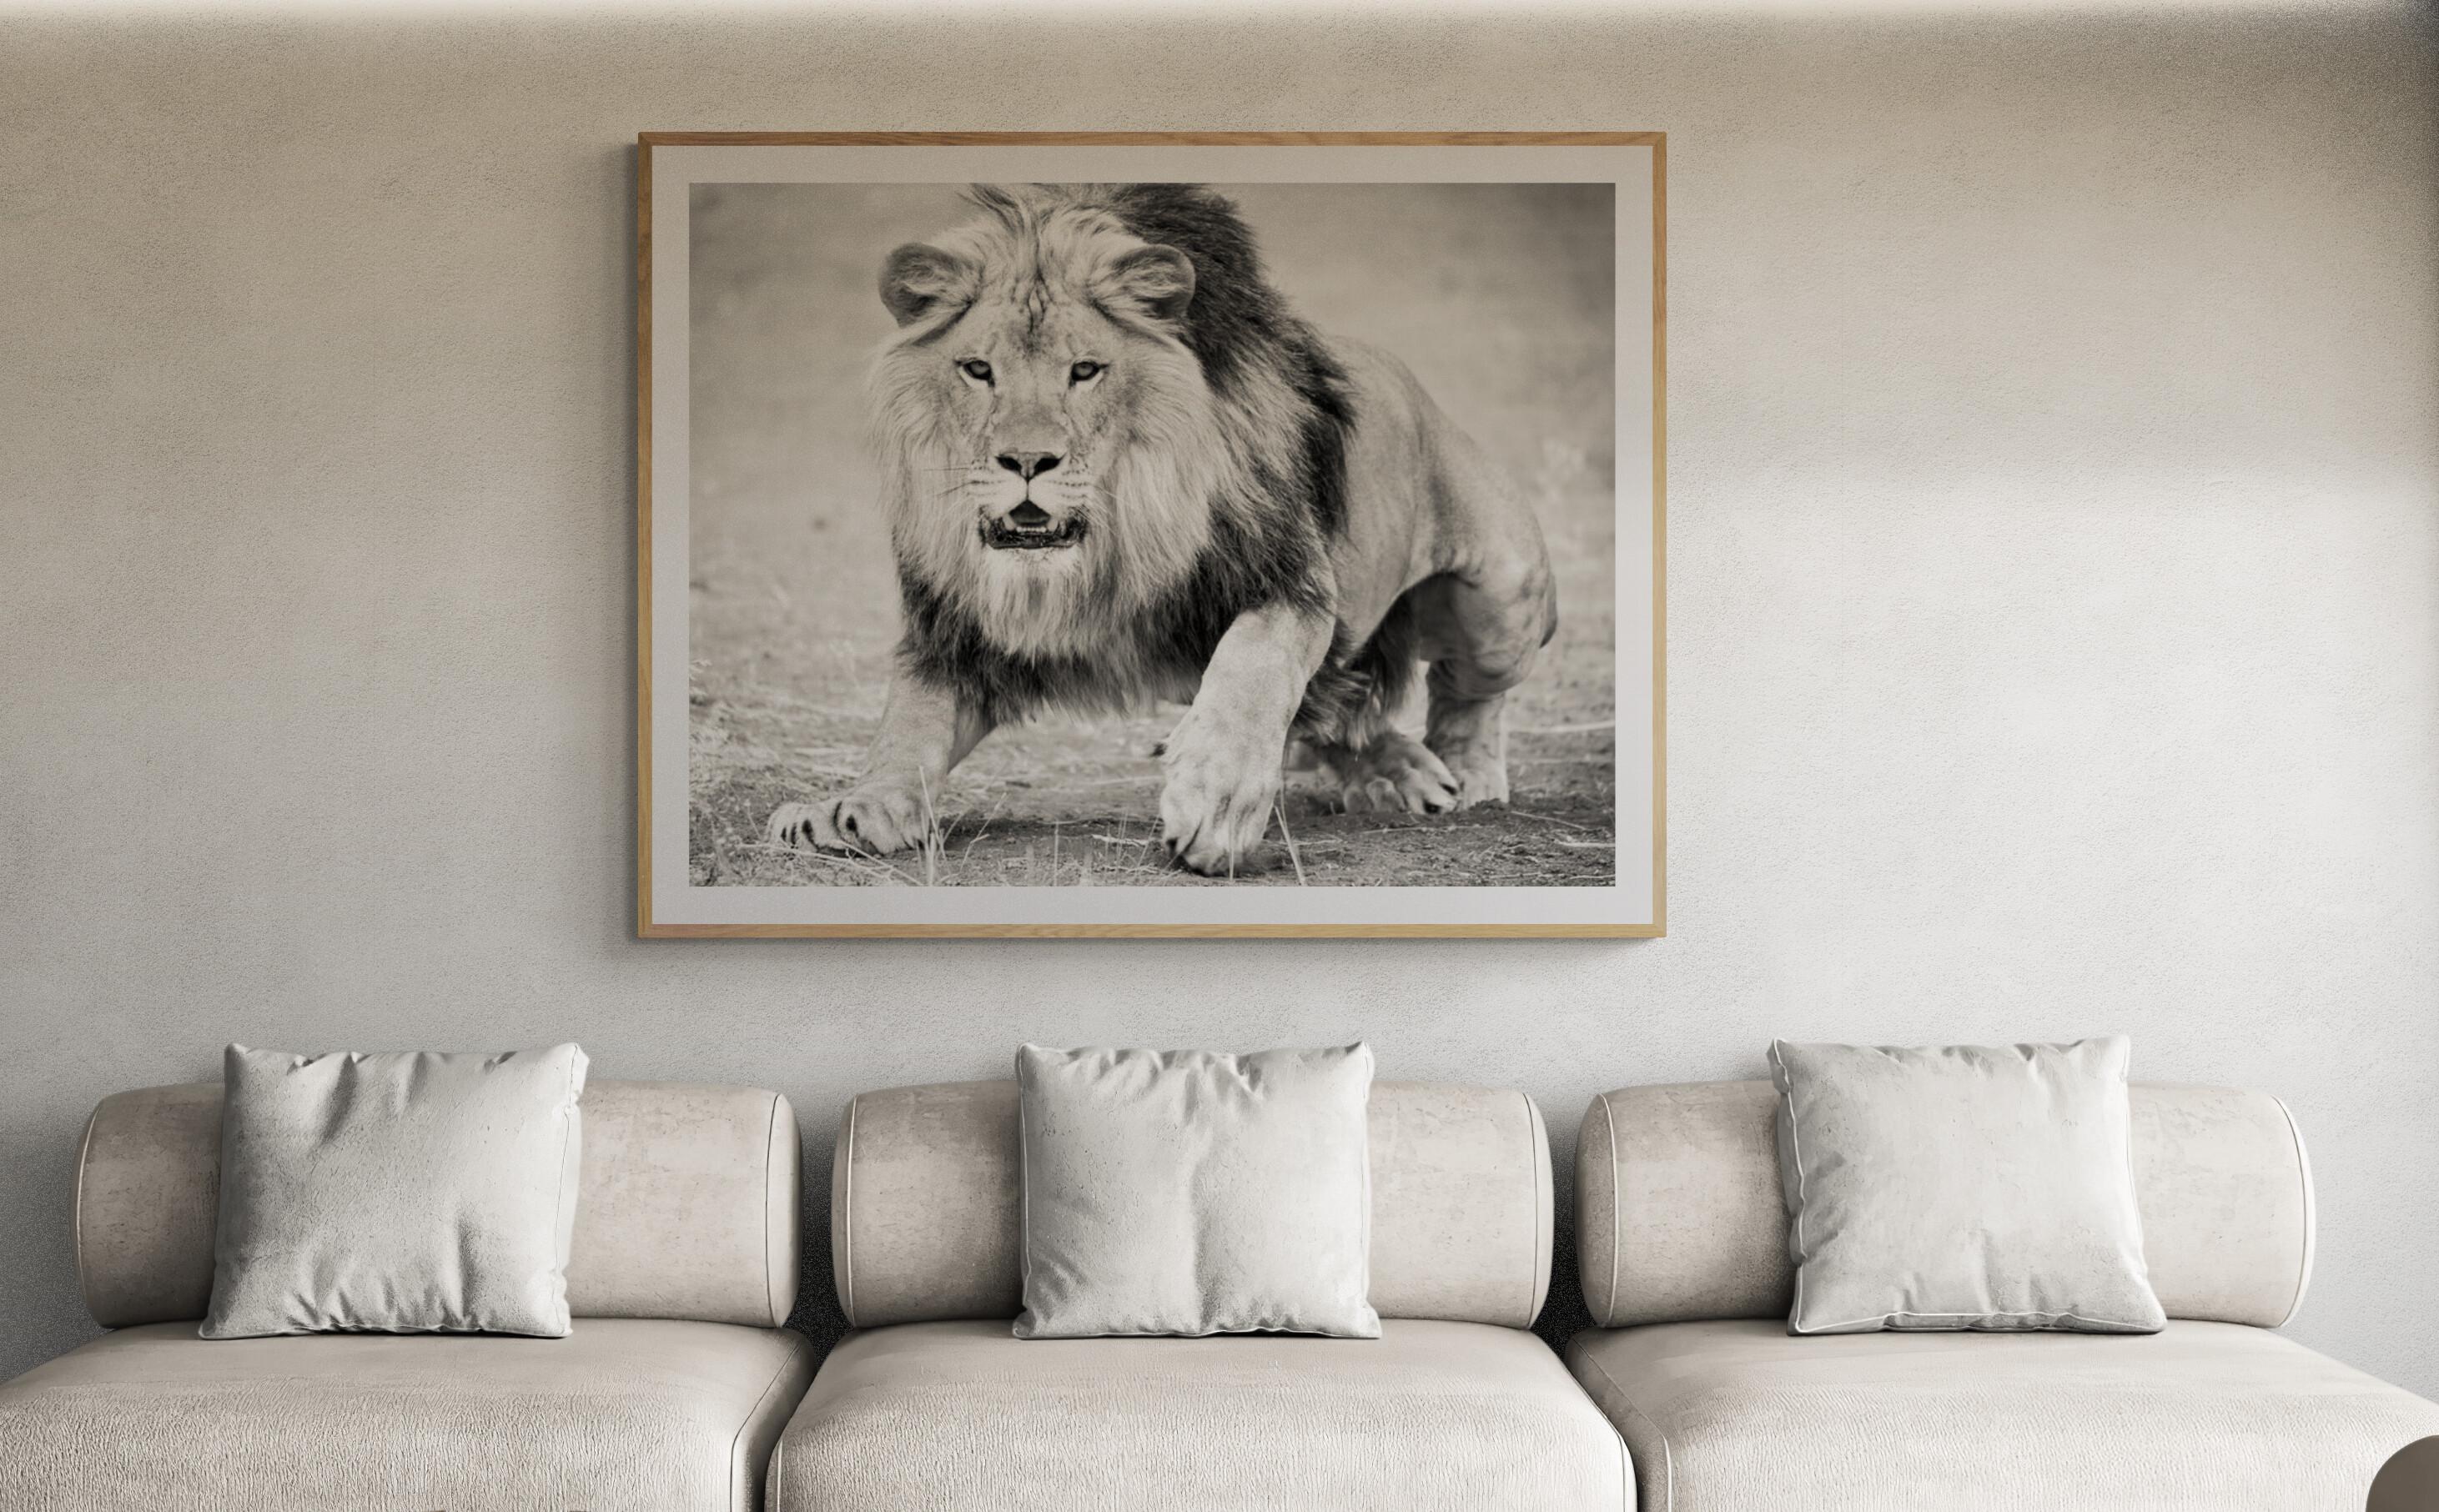 Dies ist eine zeitgenössische Fotografie eines afrikanischen Löwen. 
50x60 
Gedruckt auf Archivpapier und mit Archivtinten
Einrahmung verfügbar. Erkundigen Sie sich nach den Preisen. 


Shane Russeck hat sich den Ruf erworben, Amerikas Landschaften,